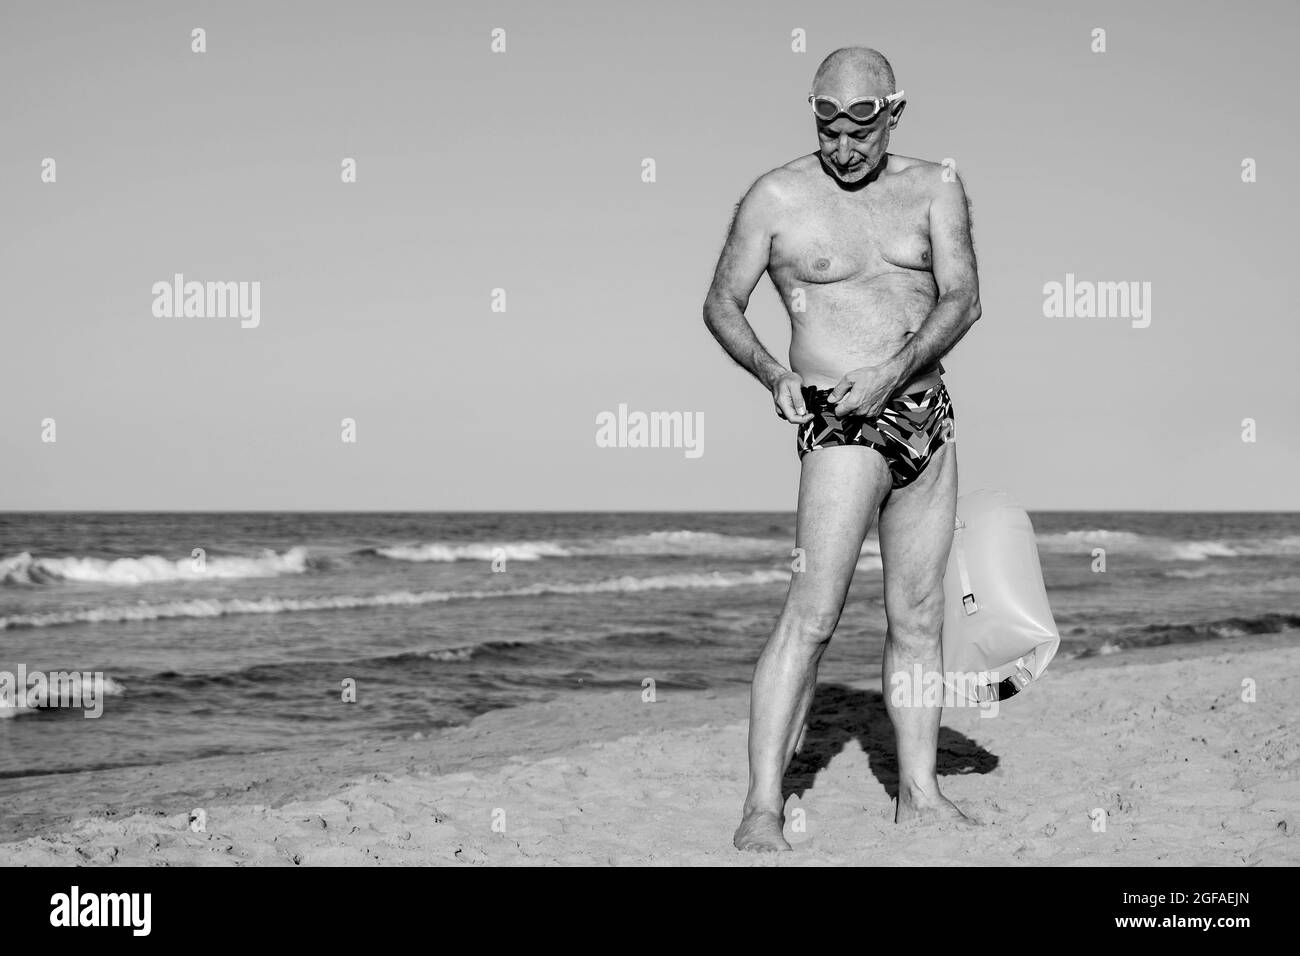 Sport nuotatore senior man formazione per nuotare in acqua aperta triathlon con spiaggia sullo sfondo - anziani e stile di vita sano - montaggio in bianco e nero Foto Stock